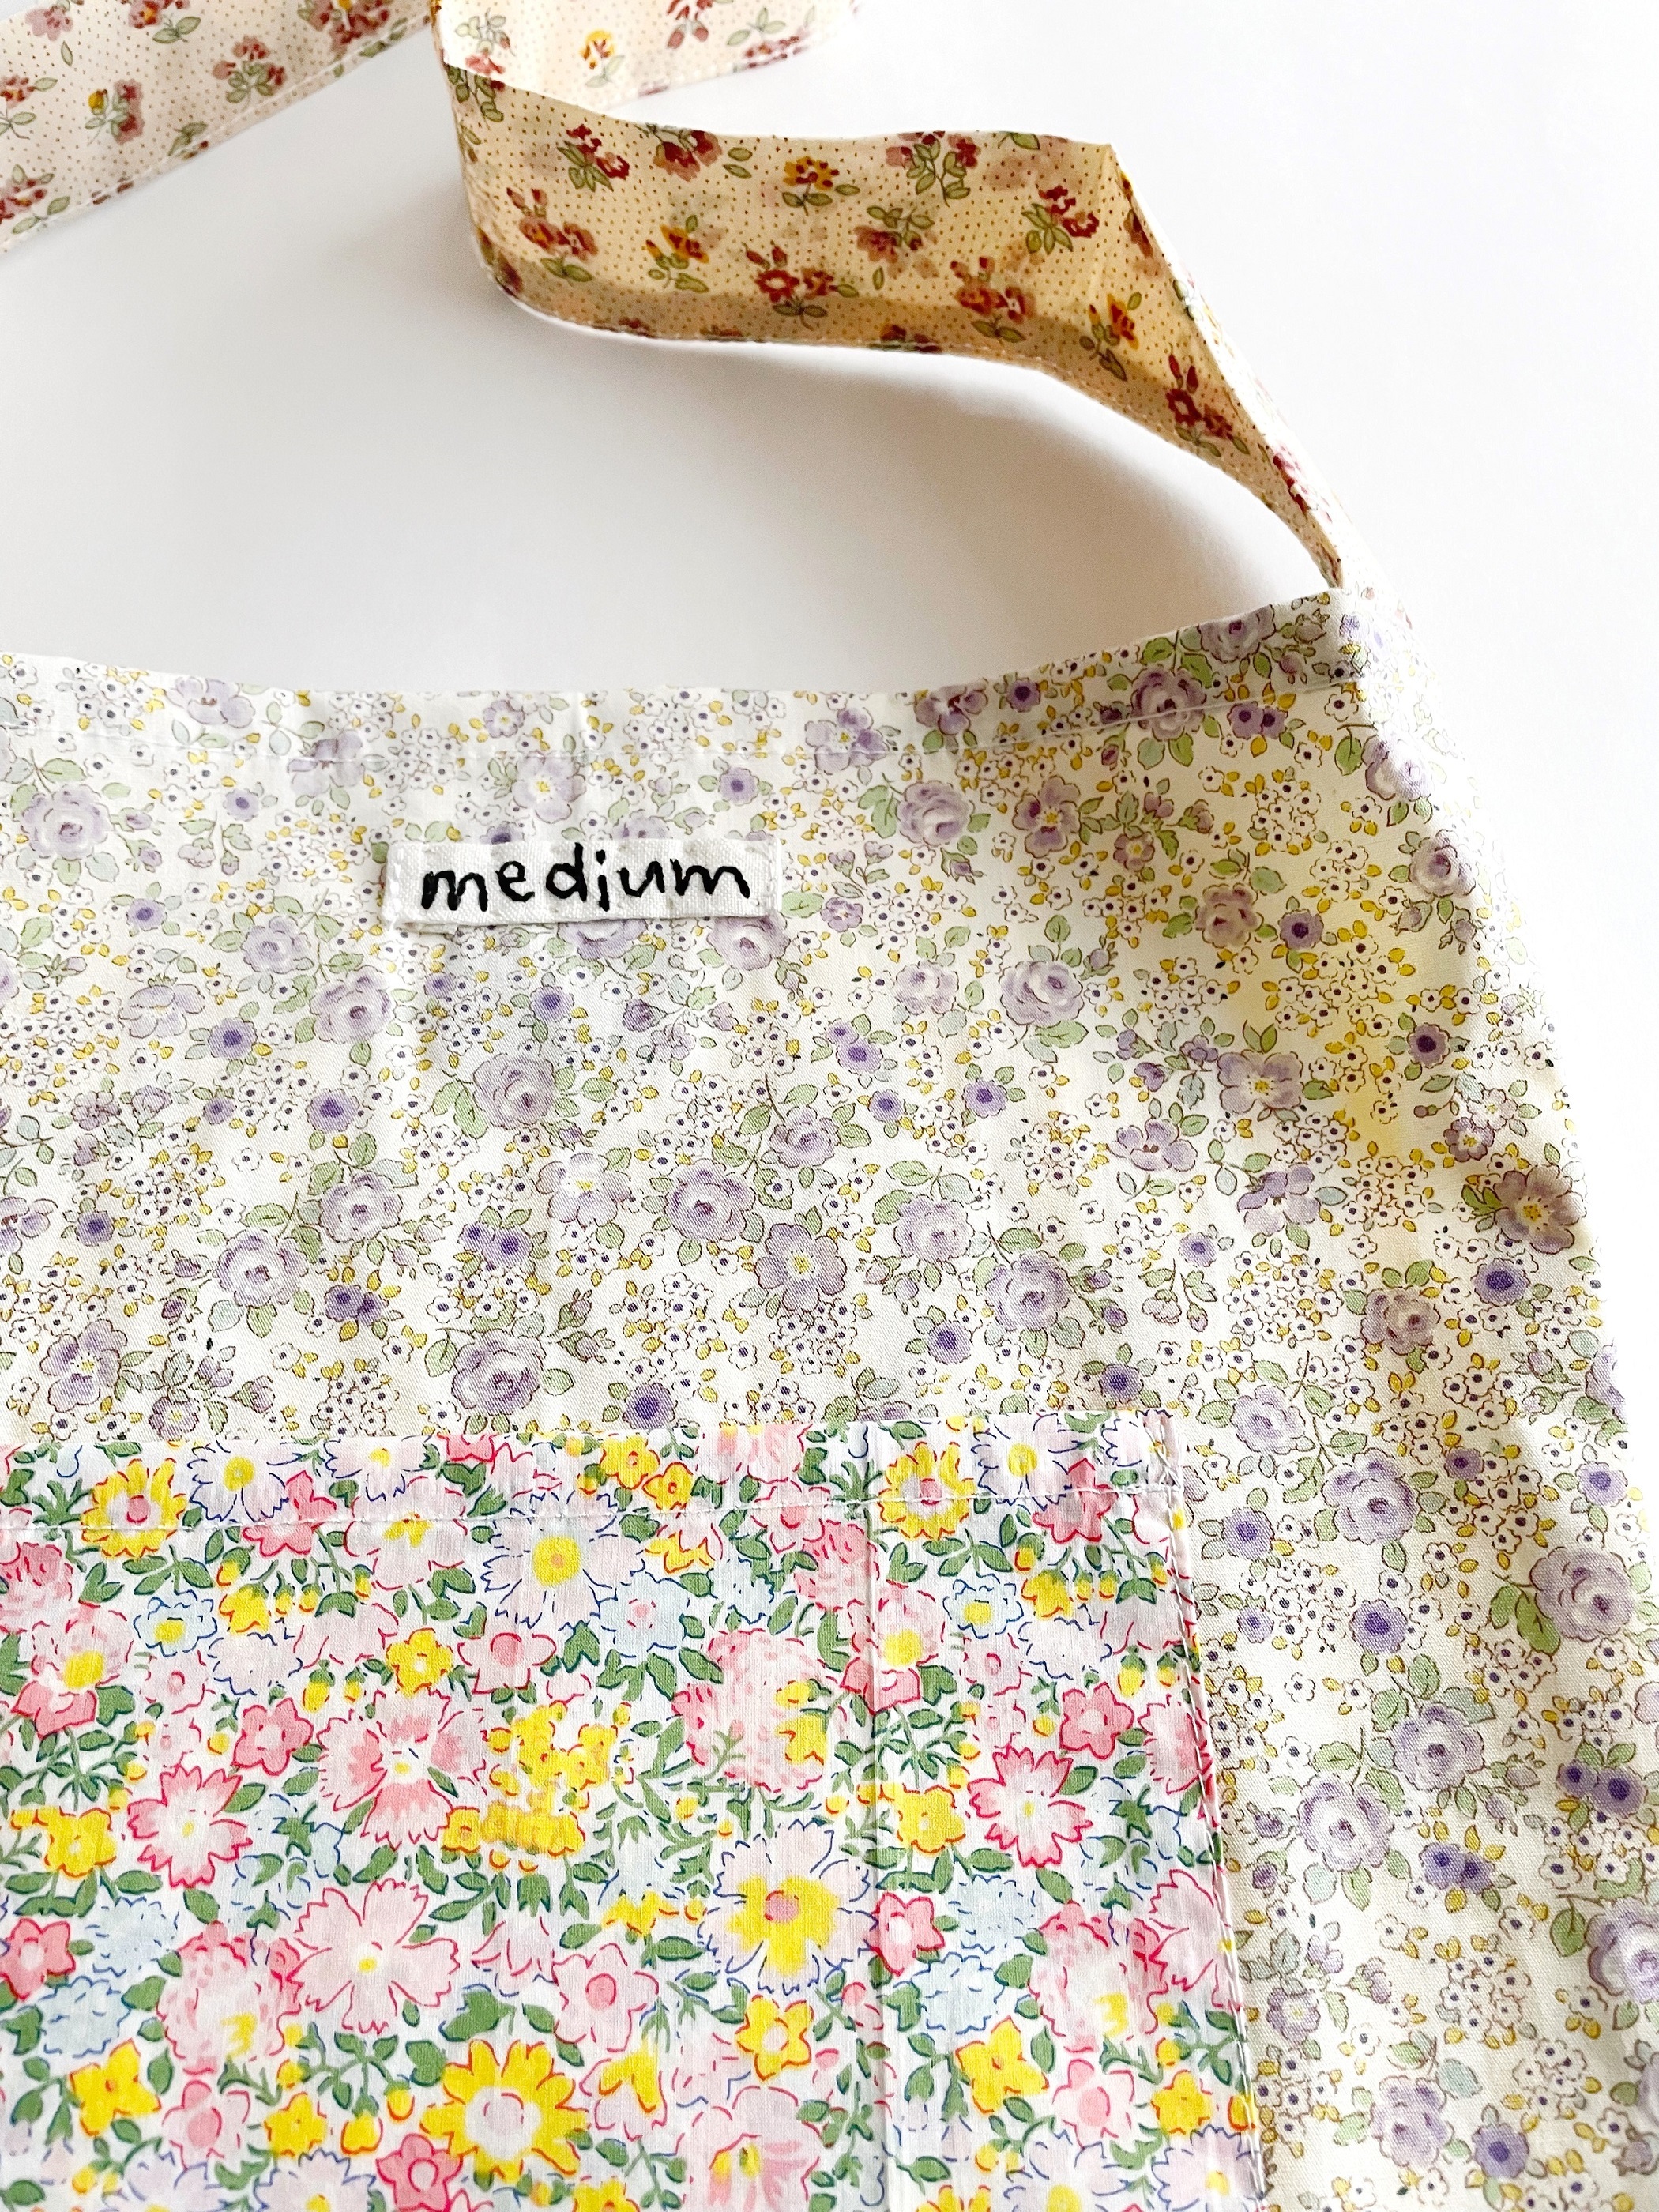 ピンク系ポケットとパープル系本体の組み合わせが可愛いmedium花柄バッグ